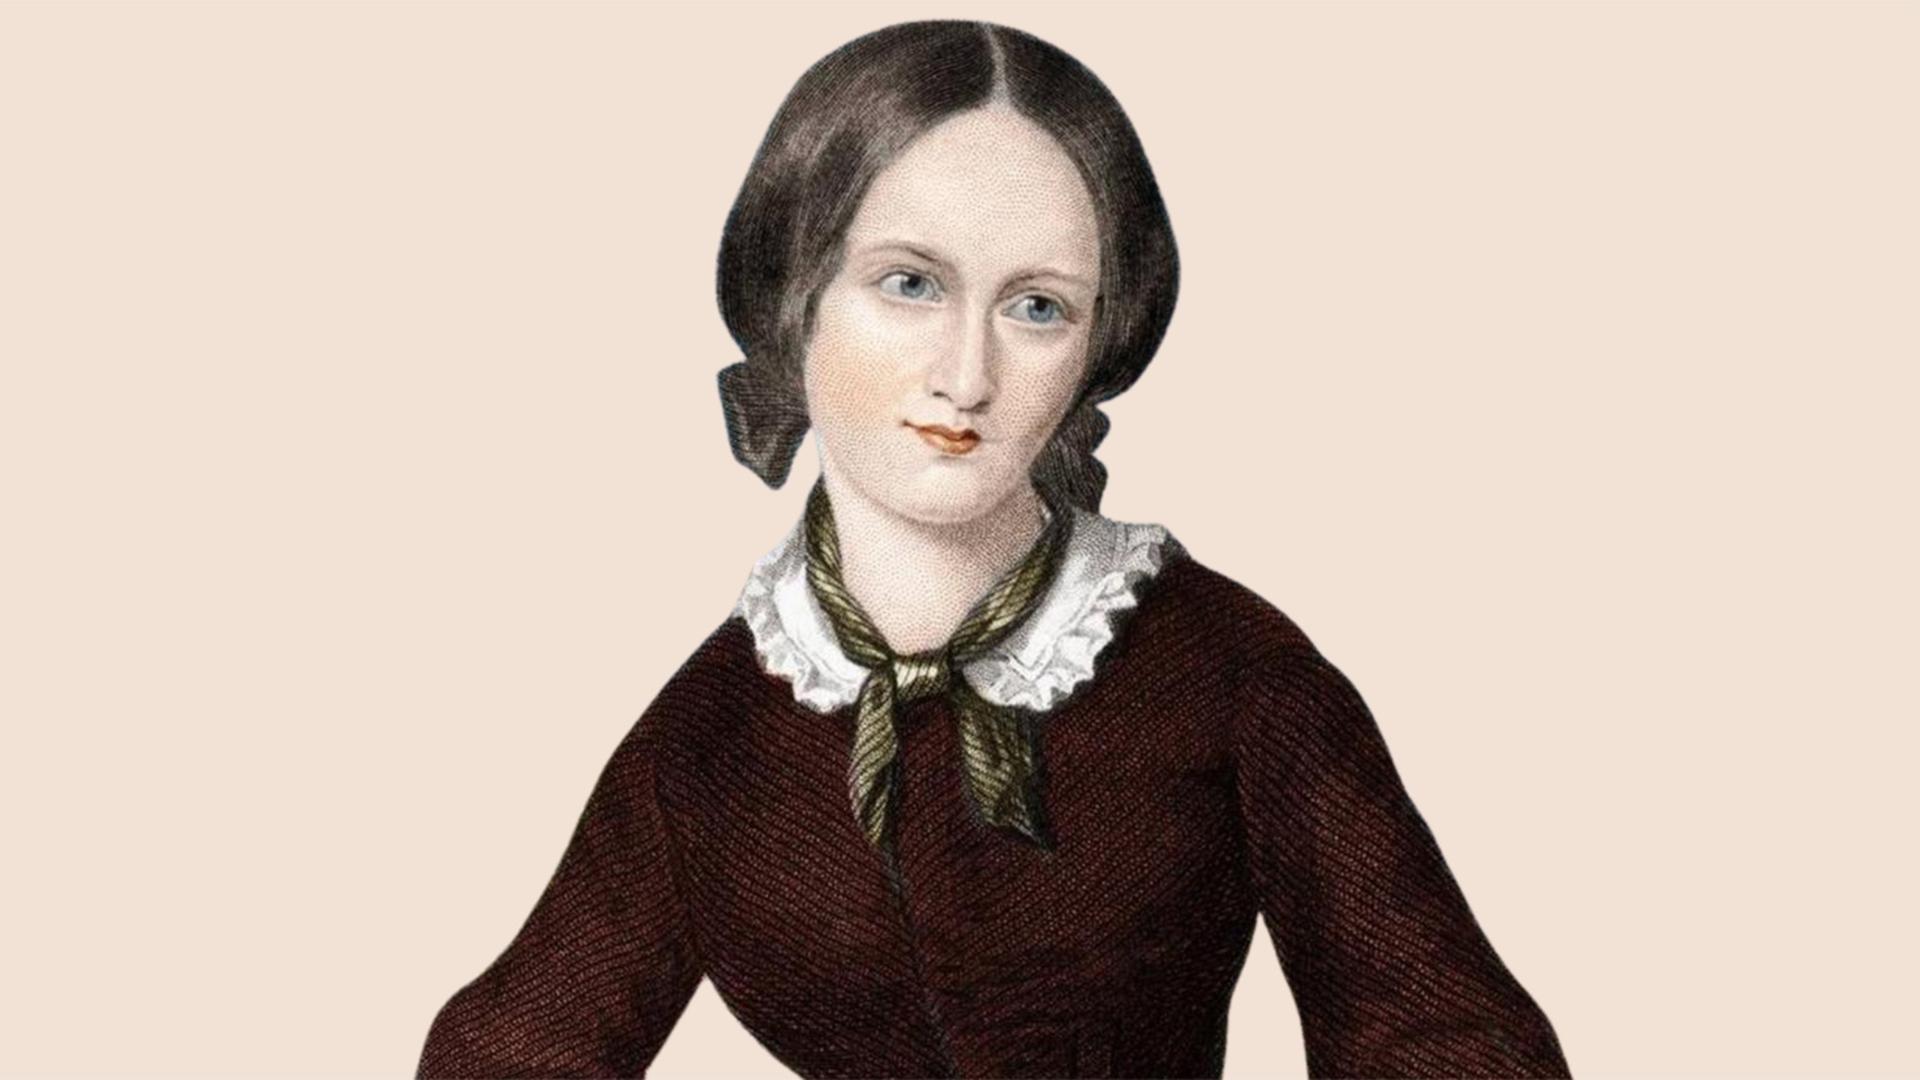 Porträt der britischen Schriftstellerin Charlotte Brontë (1816-1855)
